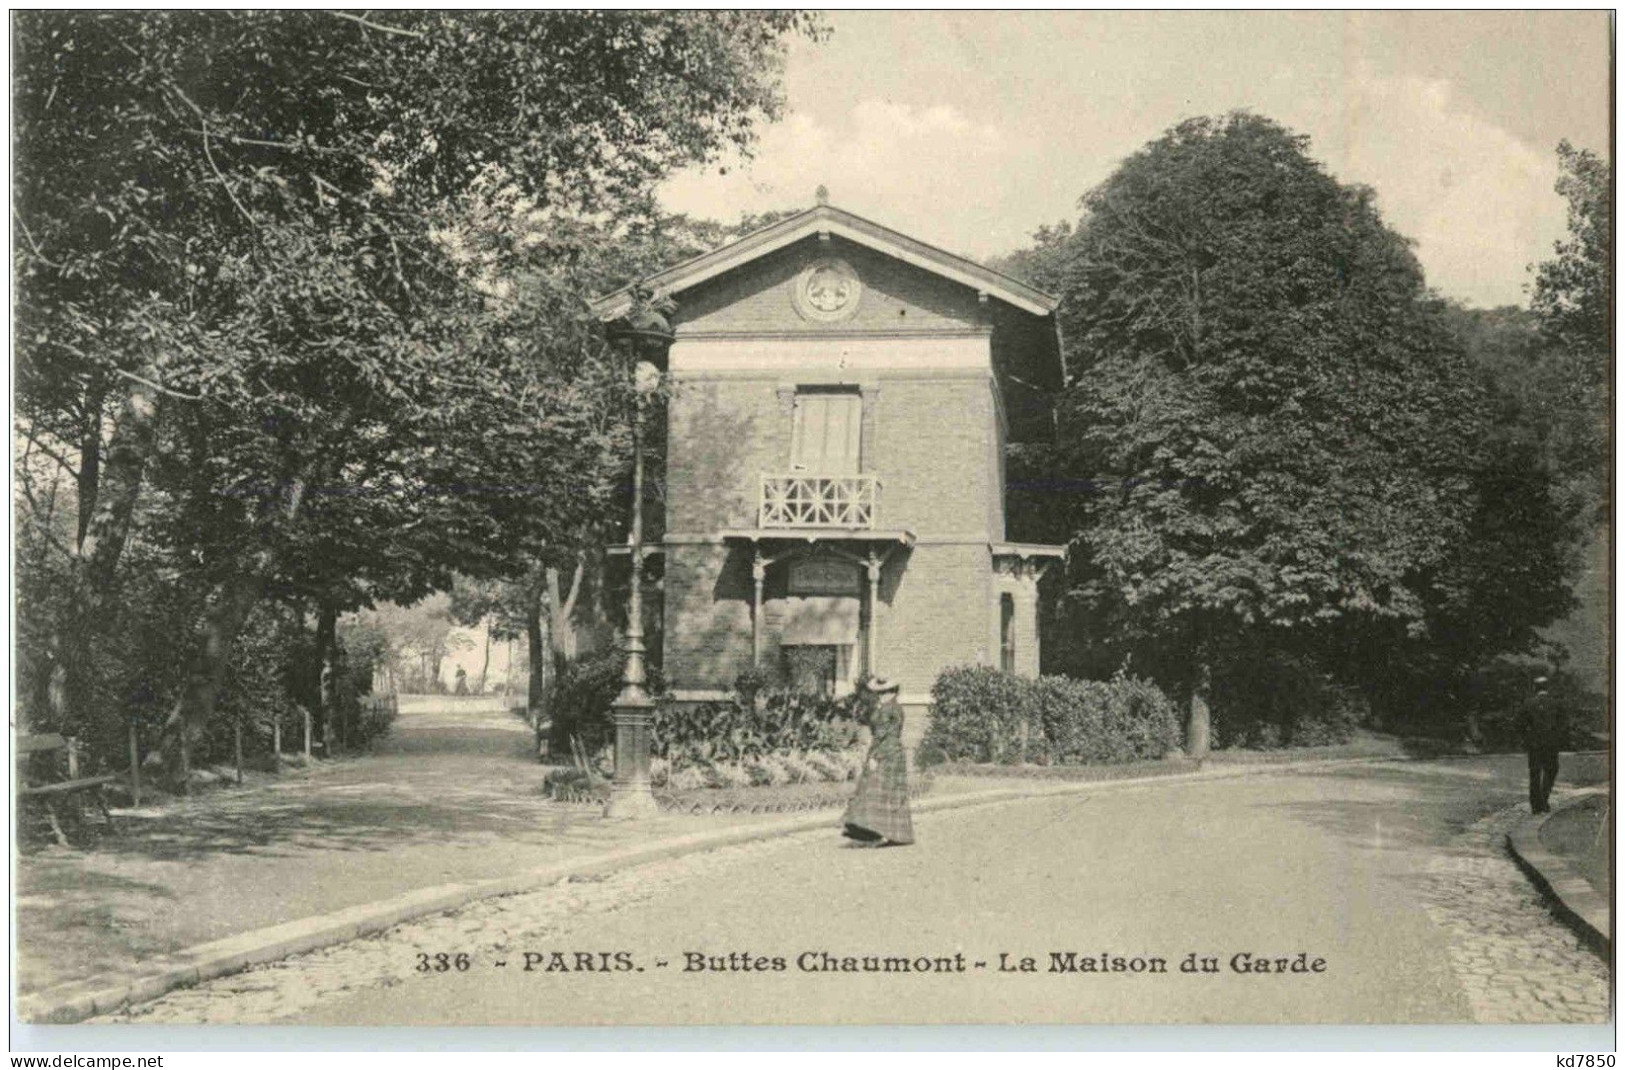 Paris - Buttes Chaumont - Paris (19)